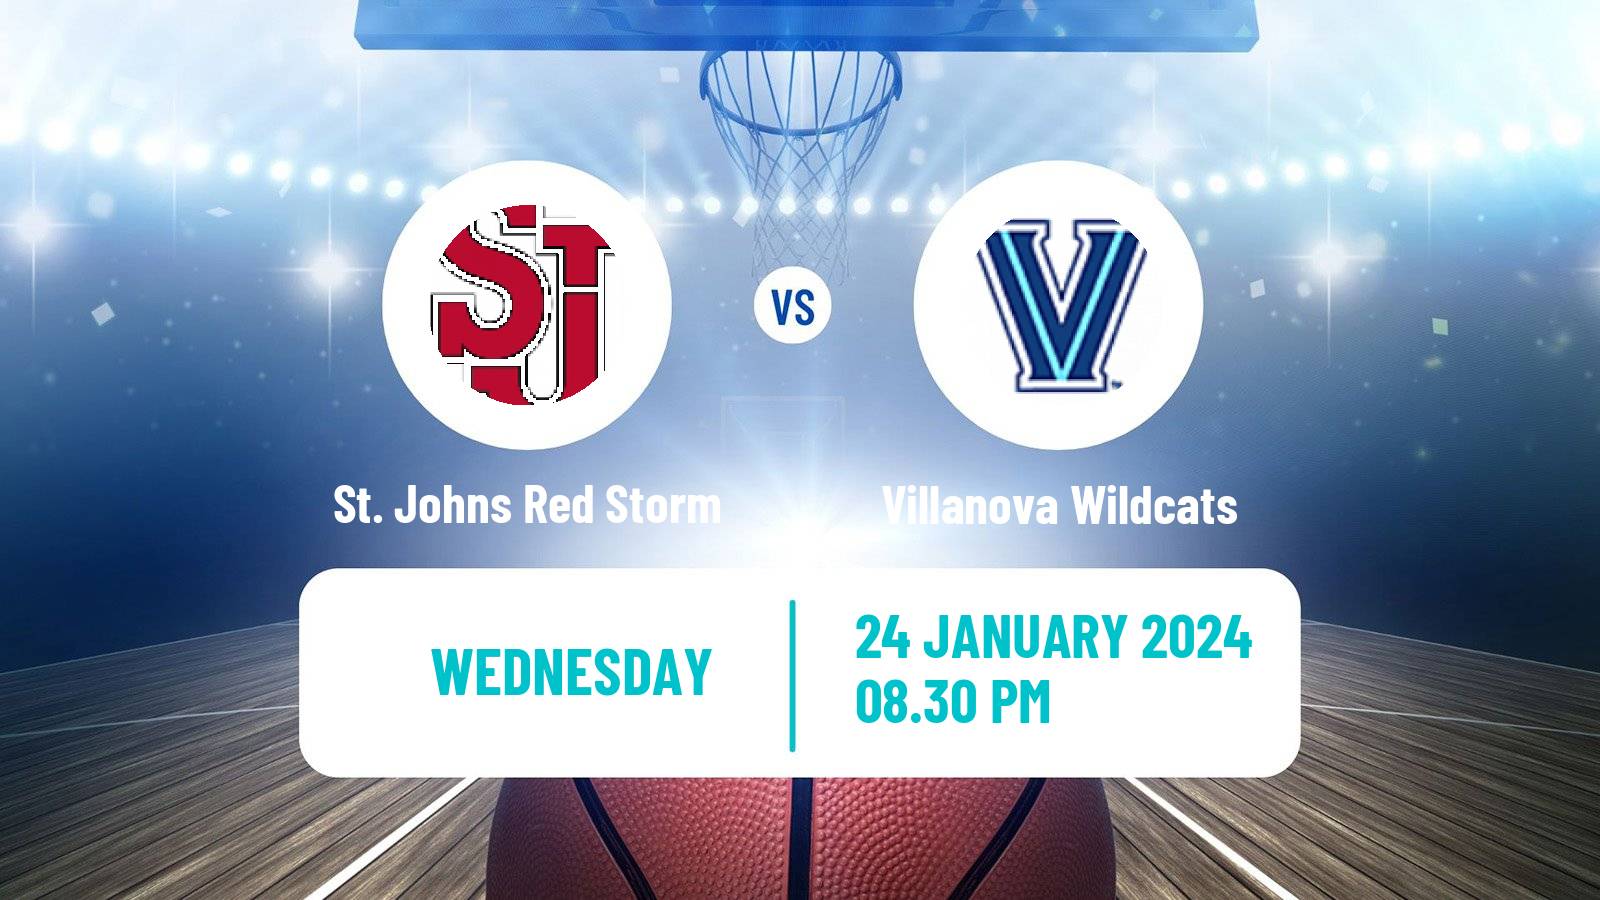 Basketball NCAA College Basketball St. Johns Red Storm - Villanova Wildcats